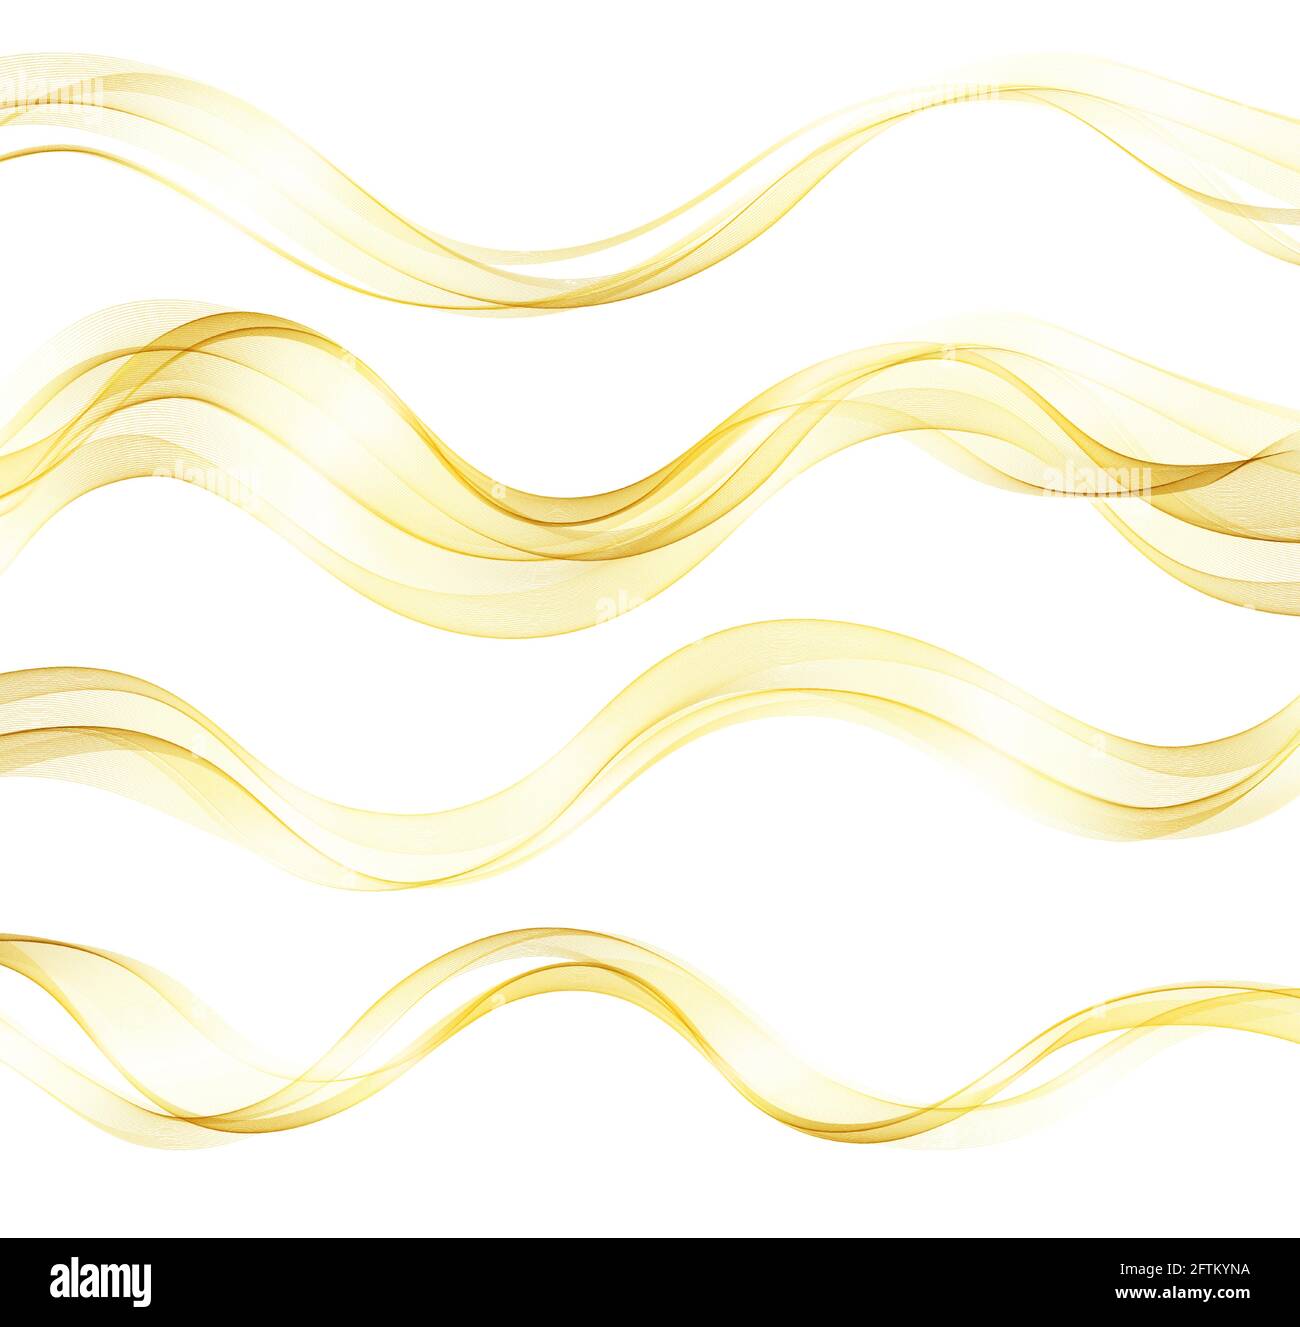 Vecteur abstrait coloré fluide des lignes d'ondes d'or isolées sur fond blanc. Élément design pour invitation de mariage, carte de vœux Illustration de Vecteur